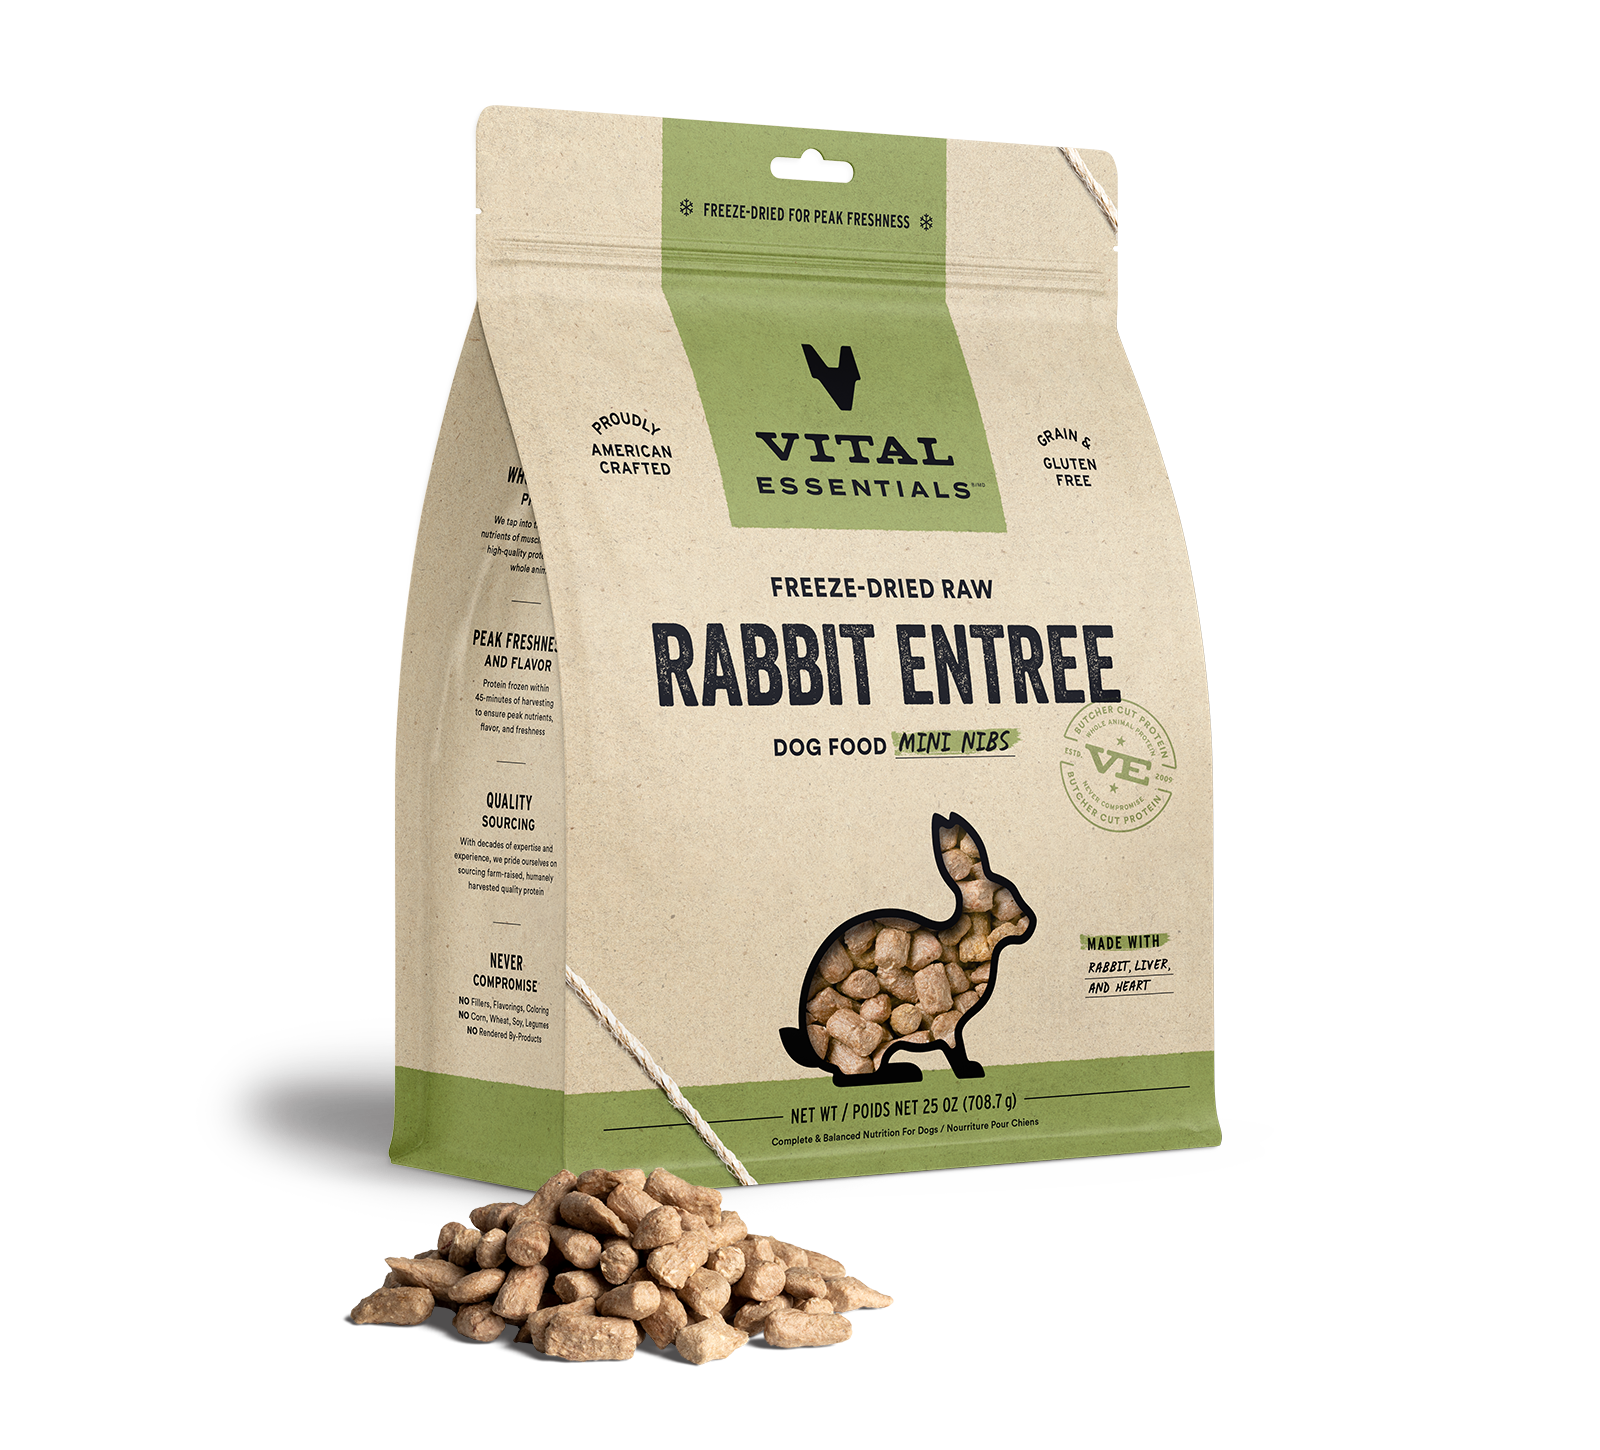 Vital Essentials Freeze-Dried Raw Rabbit Entree Dog Food Mini Nibs, 25 oz - Health/First Aid